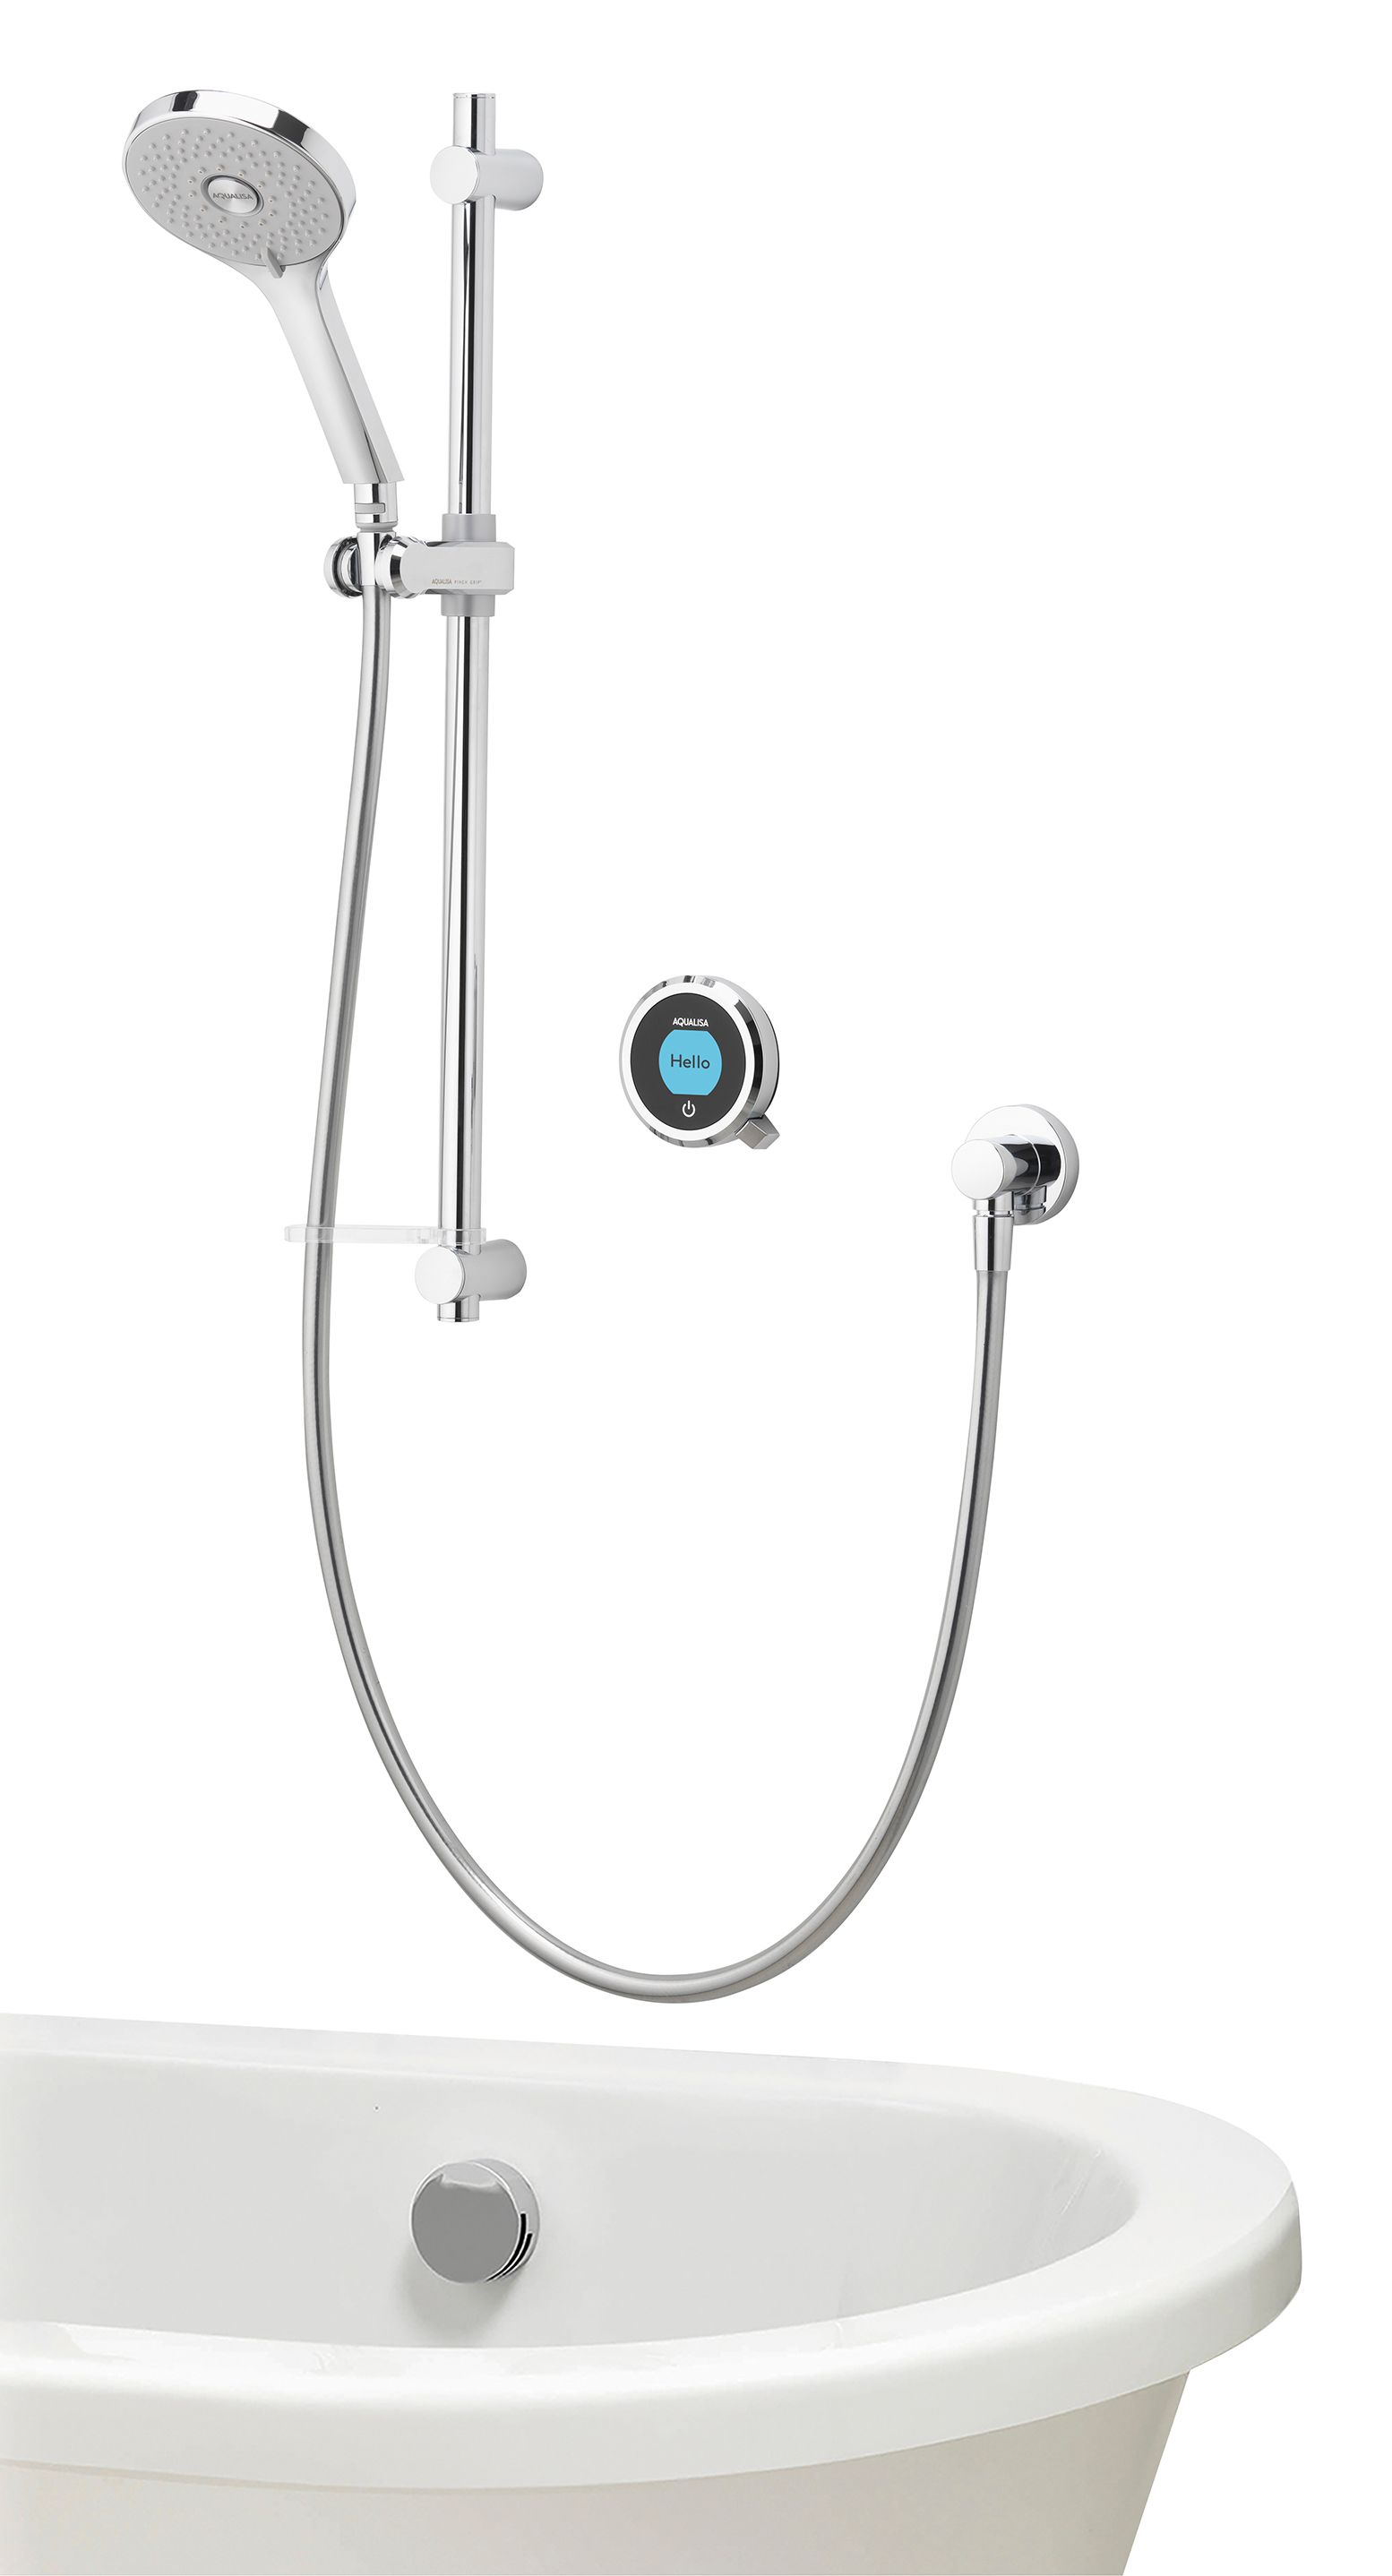 Aqualisa Optic Q Smart Divert Concealed Gravity Pumped Shower with Bath Filler & Adjustable Head